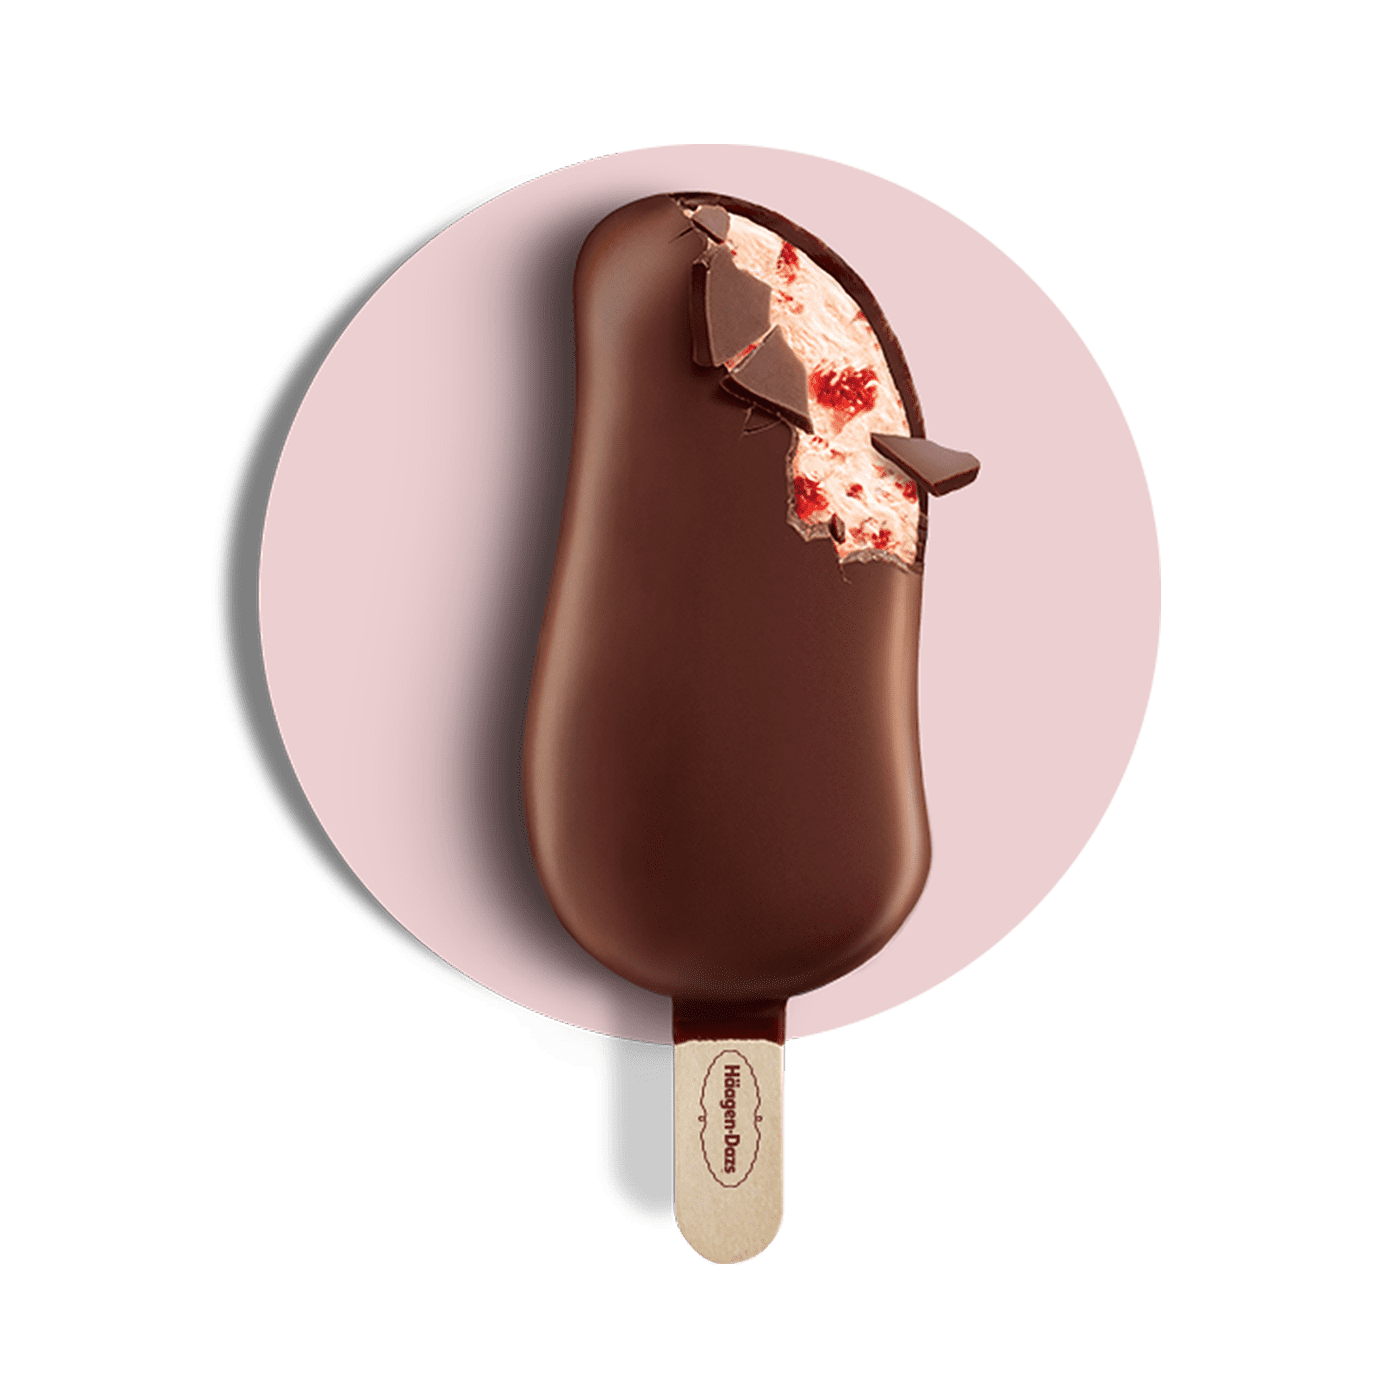 哈根达斯 冰淇淋冰棒 巧克力榛子味 | 超级商城 - 多伦多网上超市配送